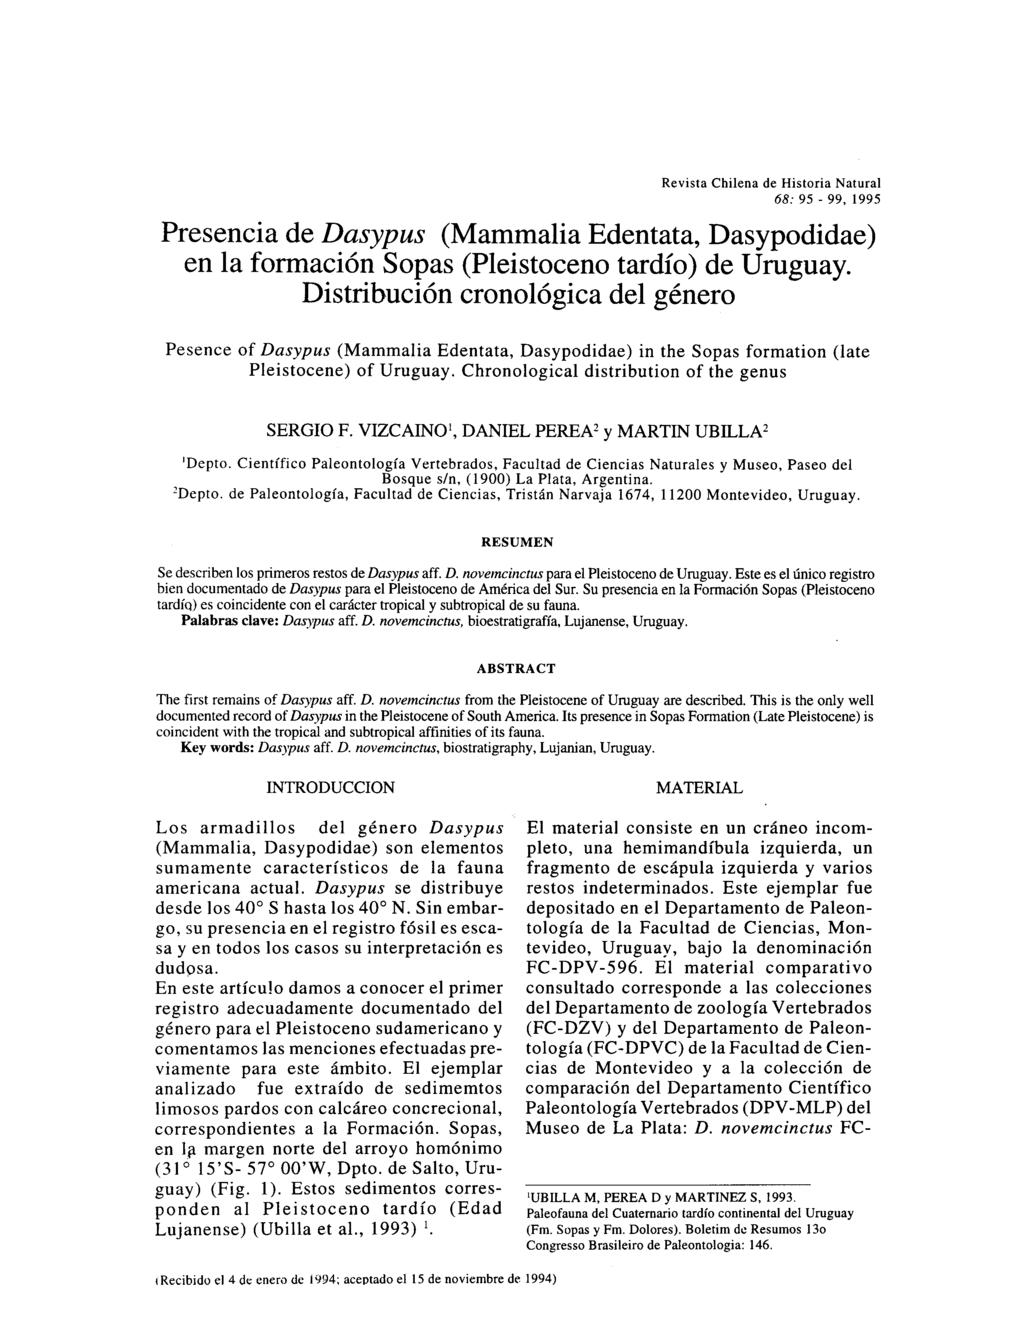 Revista Chilena de Historia Natural 68: 95-99, 1995 Presencia de Dasypus (Mammalia Edentata, Dasypodidae) en la formación Sopas (Pleistoceno tardío) de Uruguay.